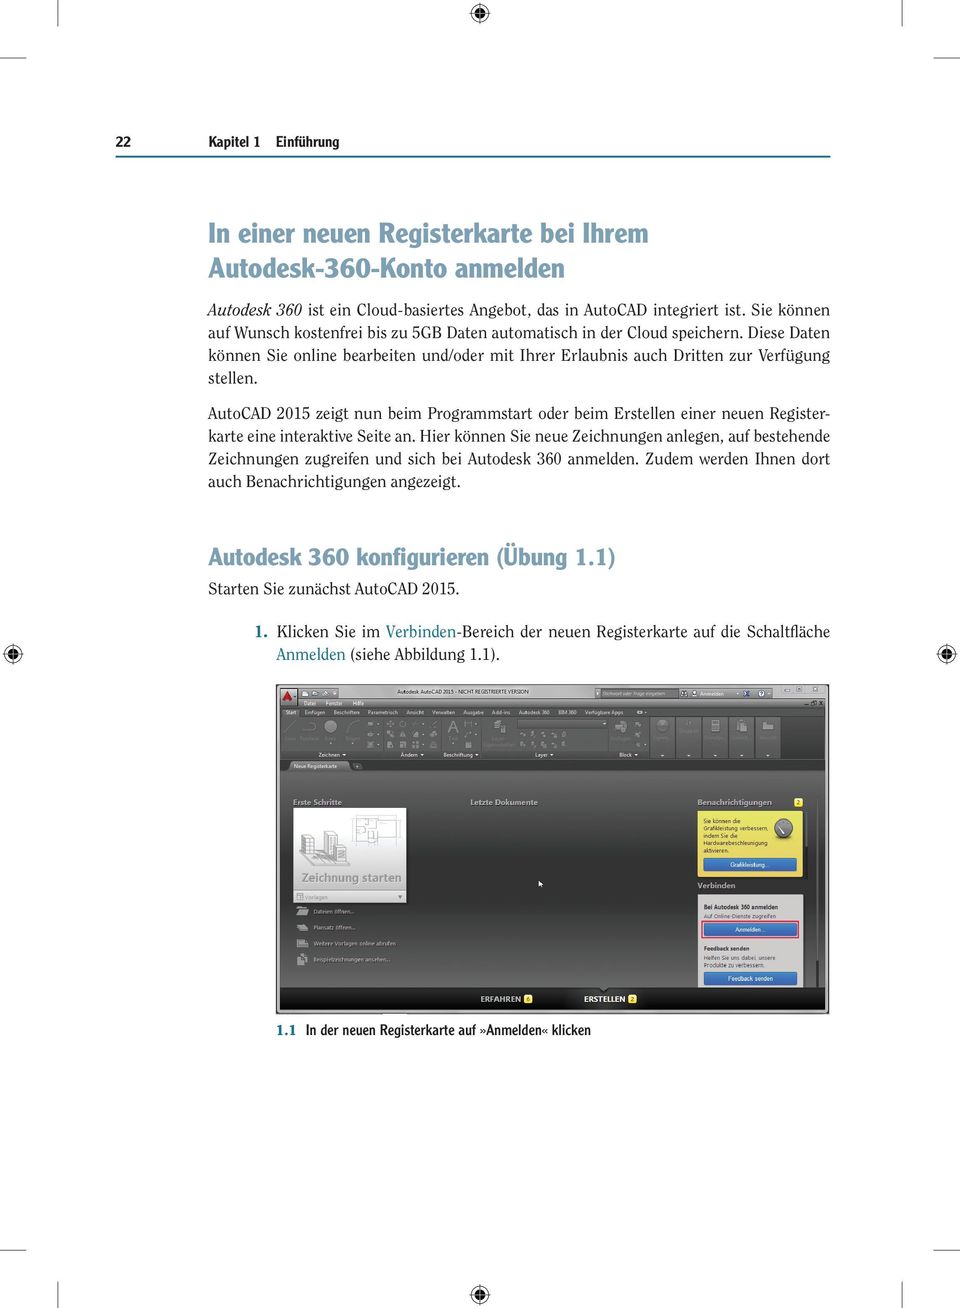 AutoCAD 2015 zeigt nun beim Programmstart oder beim Erstellen einer neuen Registerkarte eine interaktive Seite an.